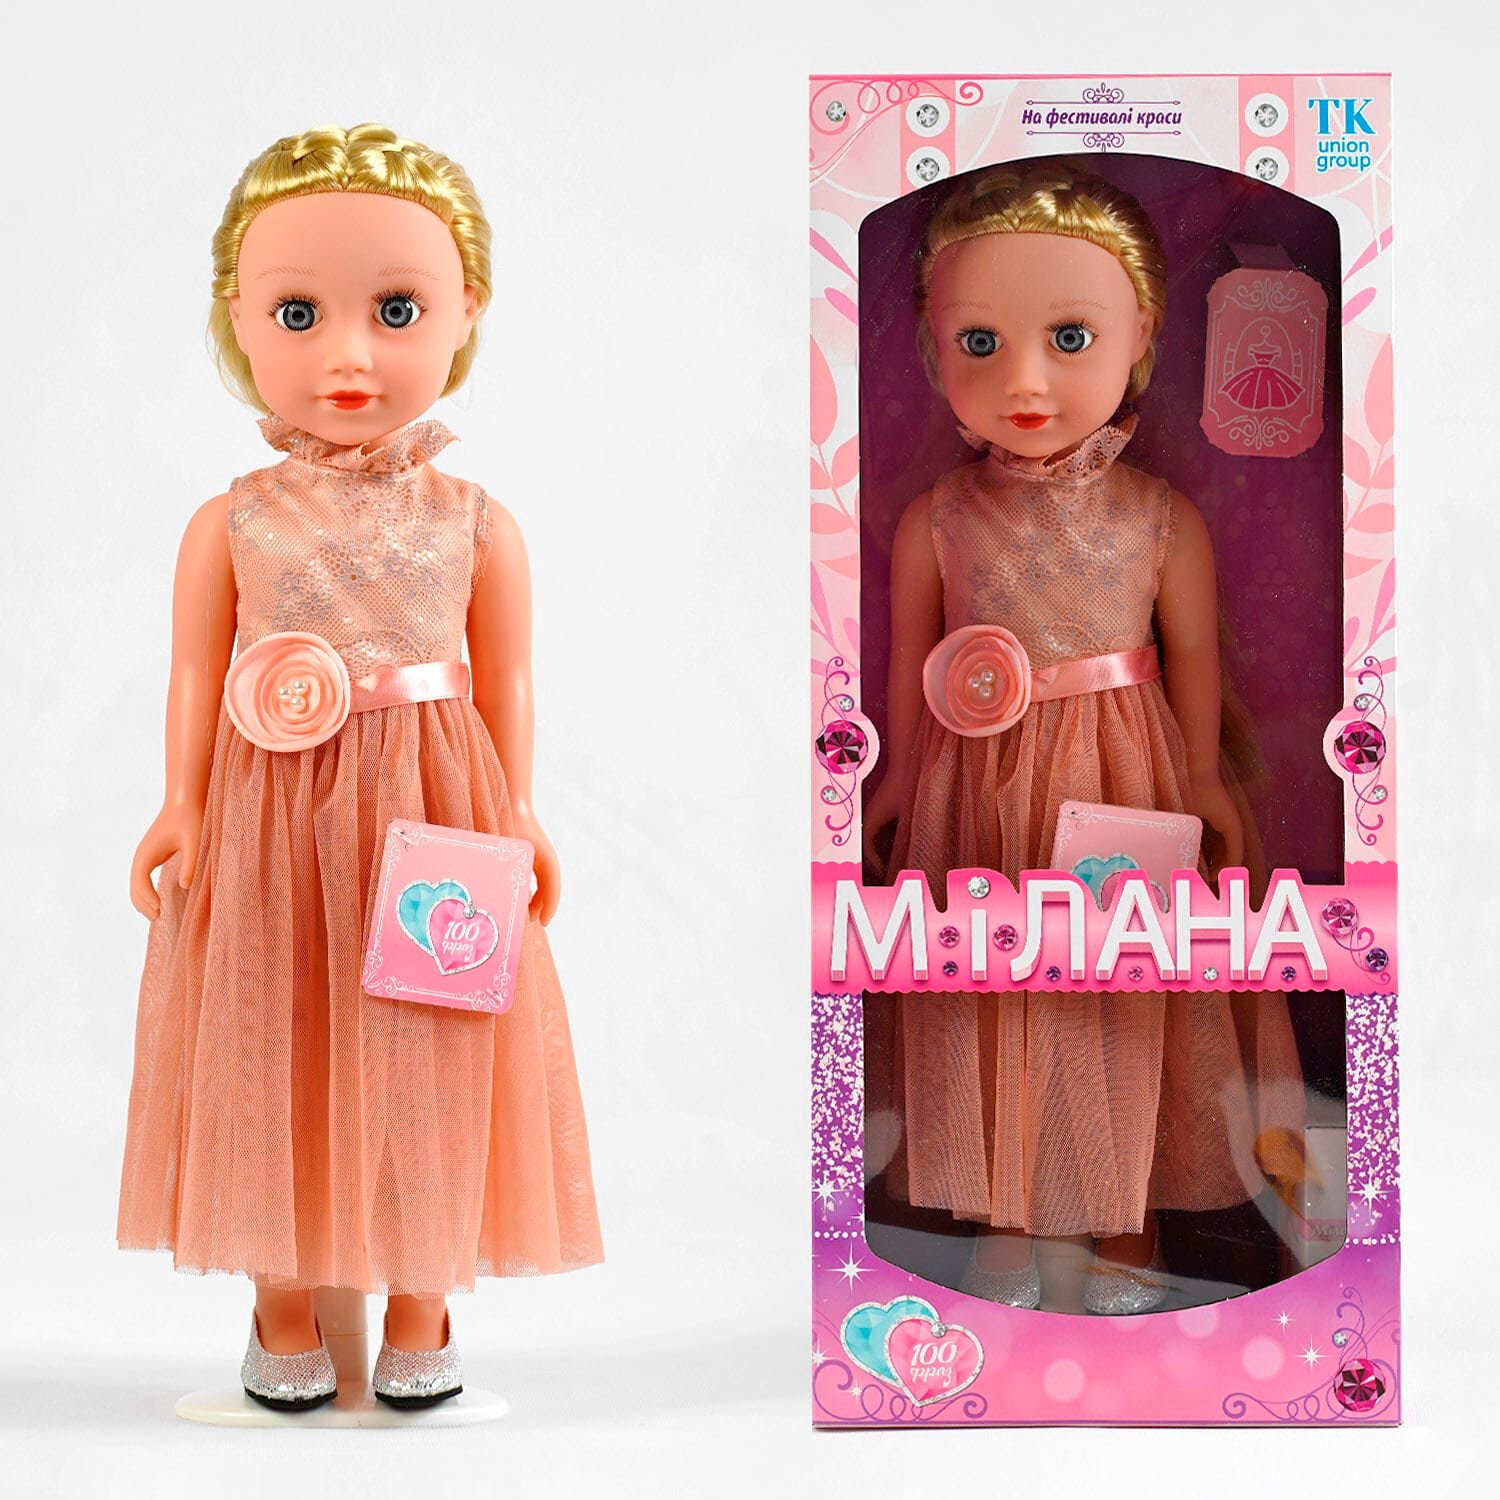 Лялька говорить 100 фраз українською мовою (ML - 20140) висота 44 см, в коробці